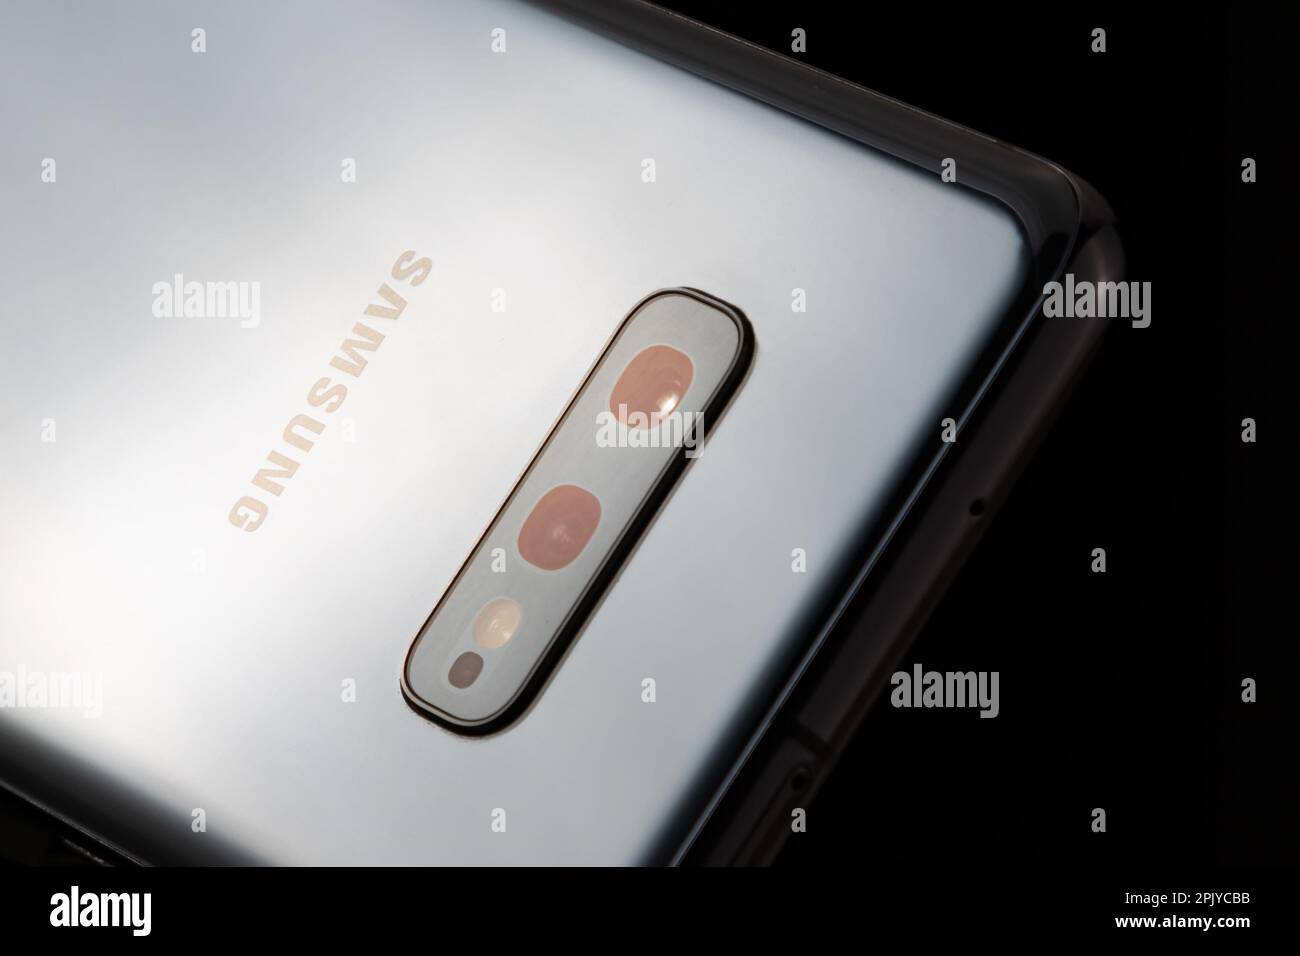 Siofok, Hongrie - 4 octobre 2019: Samsung Galaxy S10e gros plan. Marque technologique. INFORMATIQUE et électronique grand public. Photo du produit. Banque D'Images